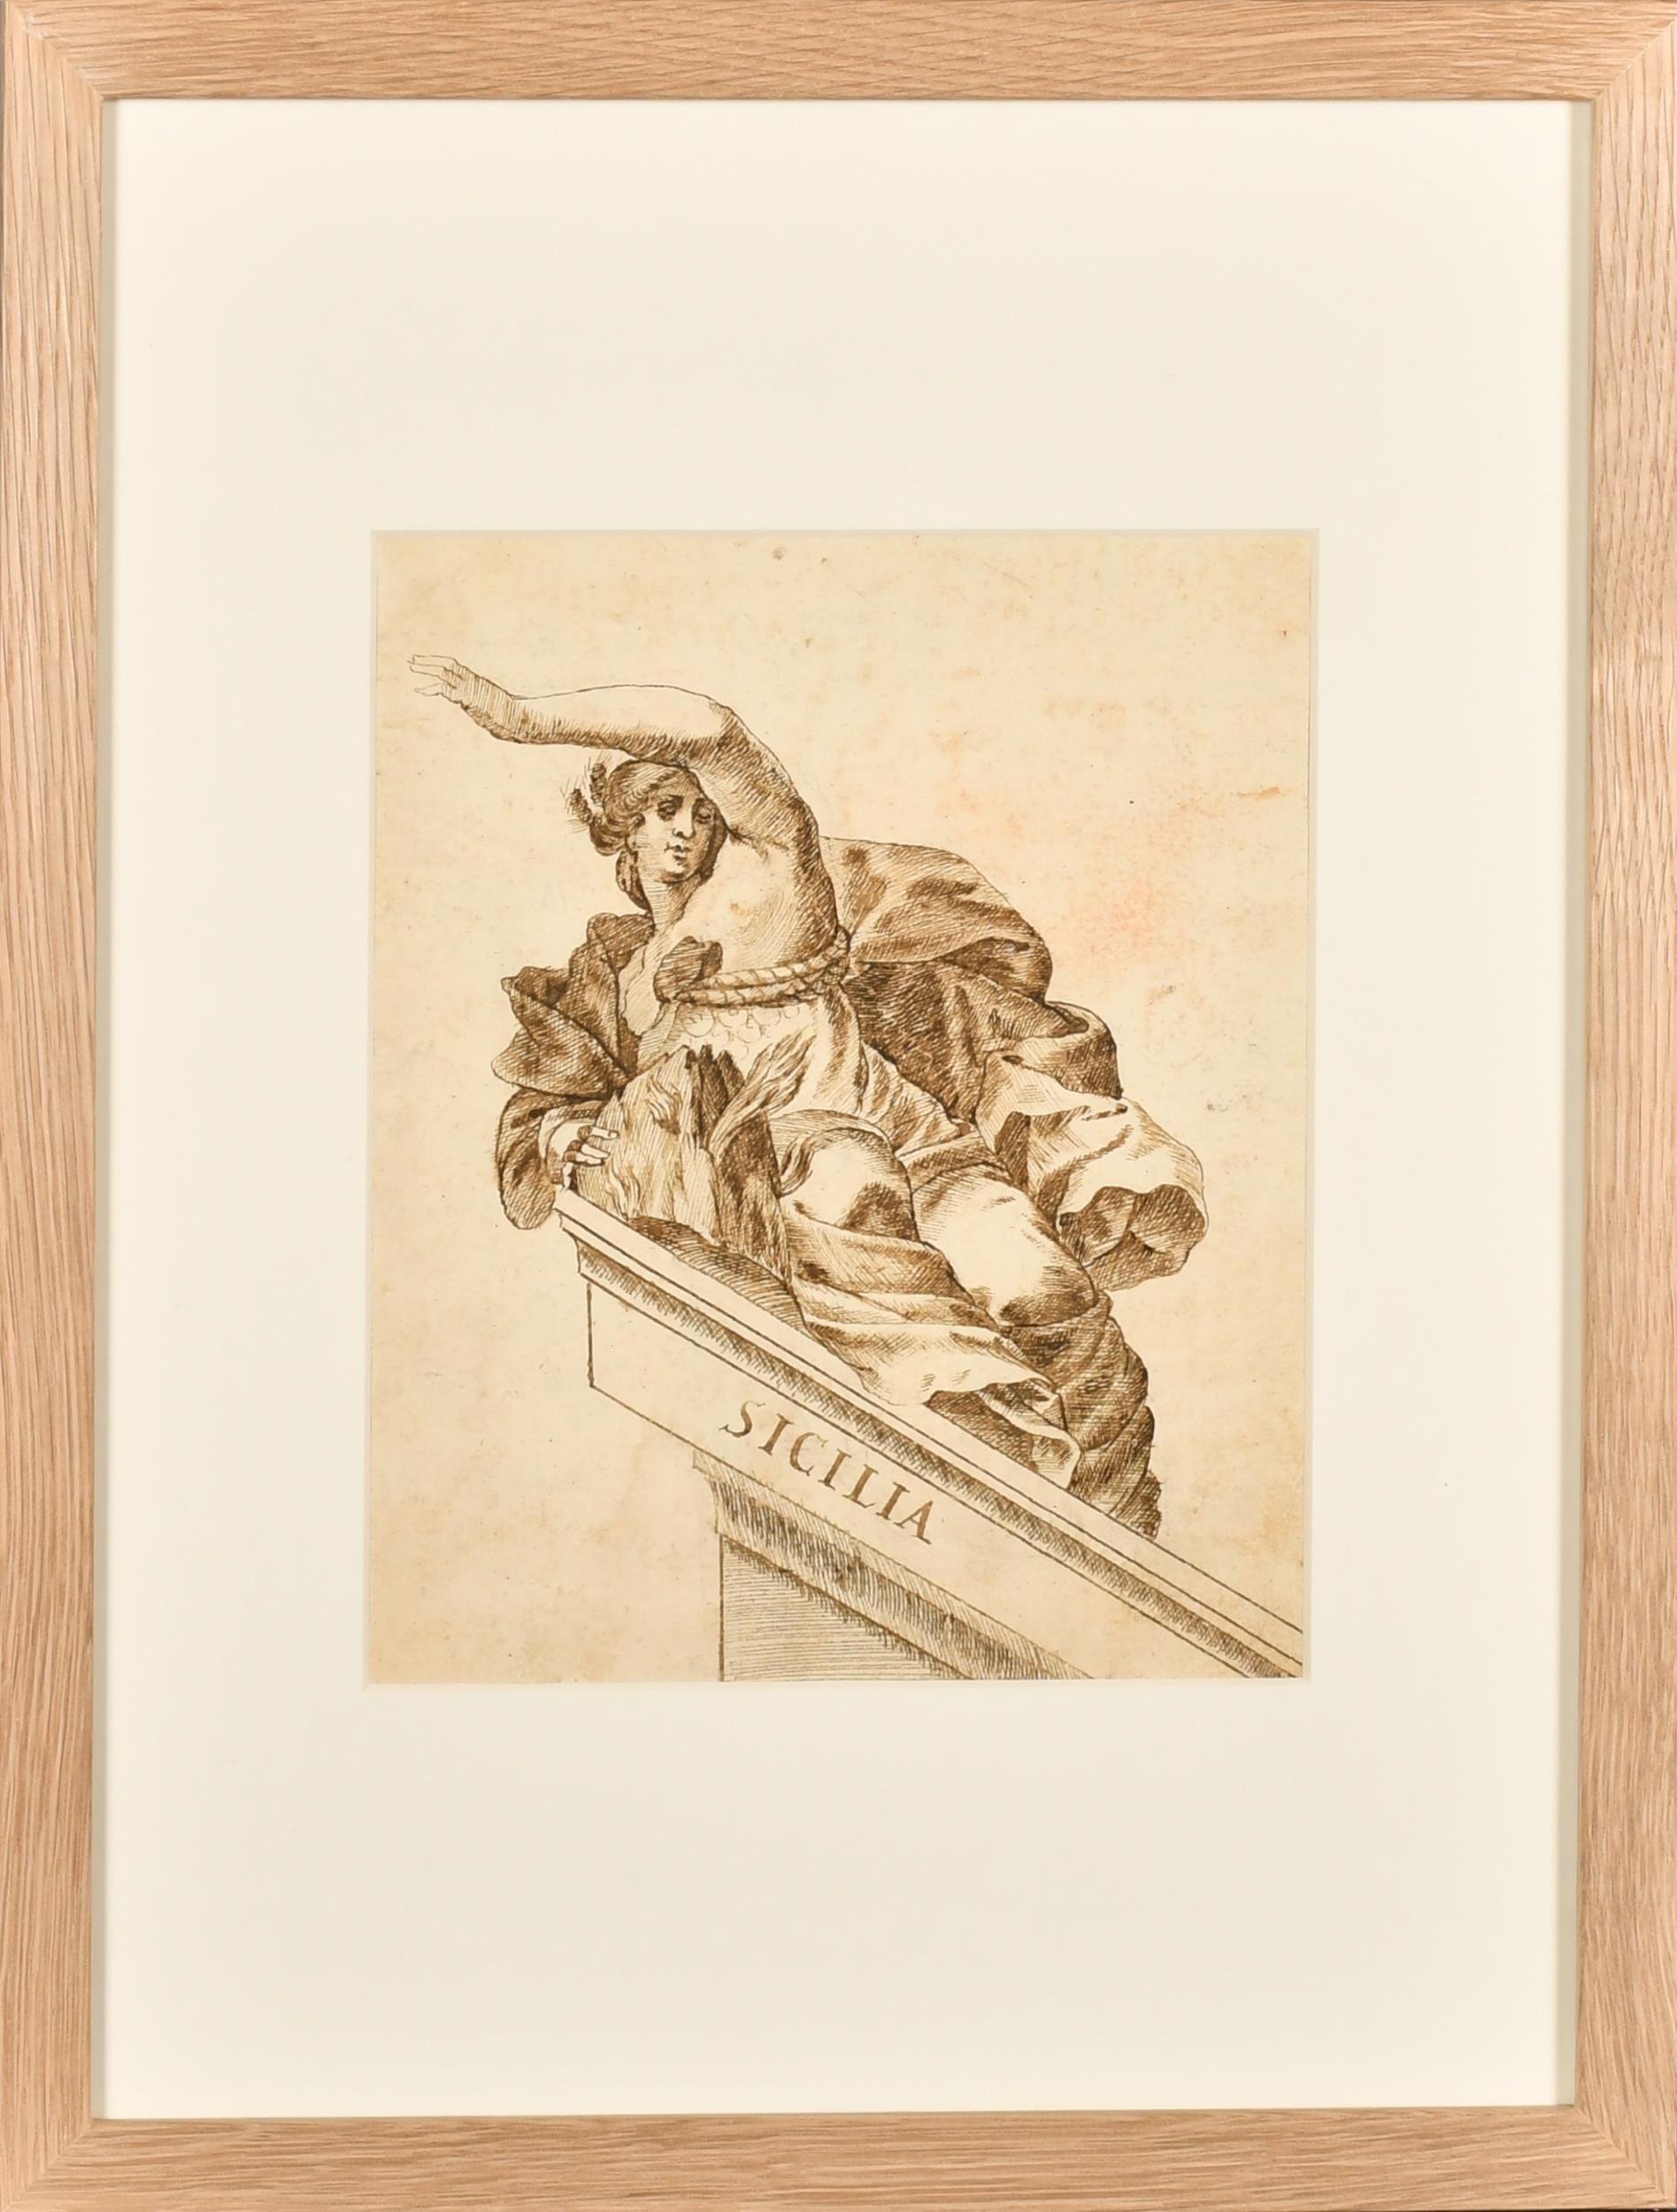 Italienische alte Meister-Tinten- und Waschzeichnung, römisch, allegorisch, Sicilia, 1700er Jahre – Painting von 18thC Italian Old Master